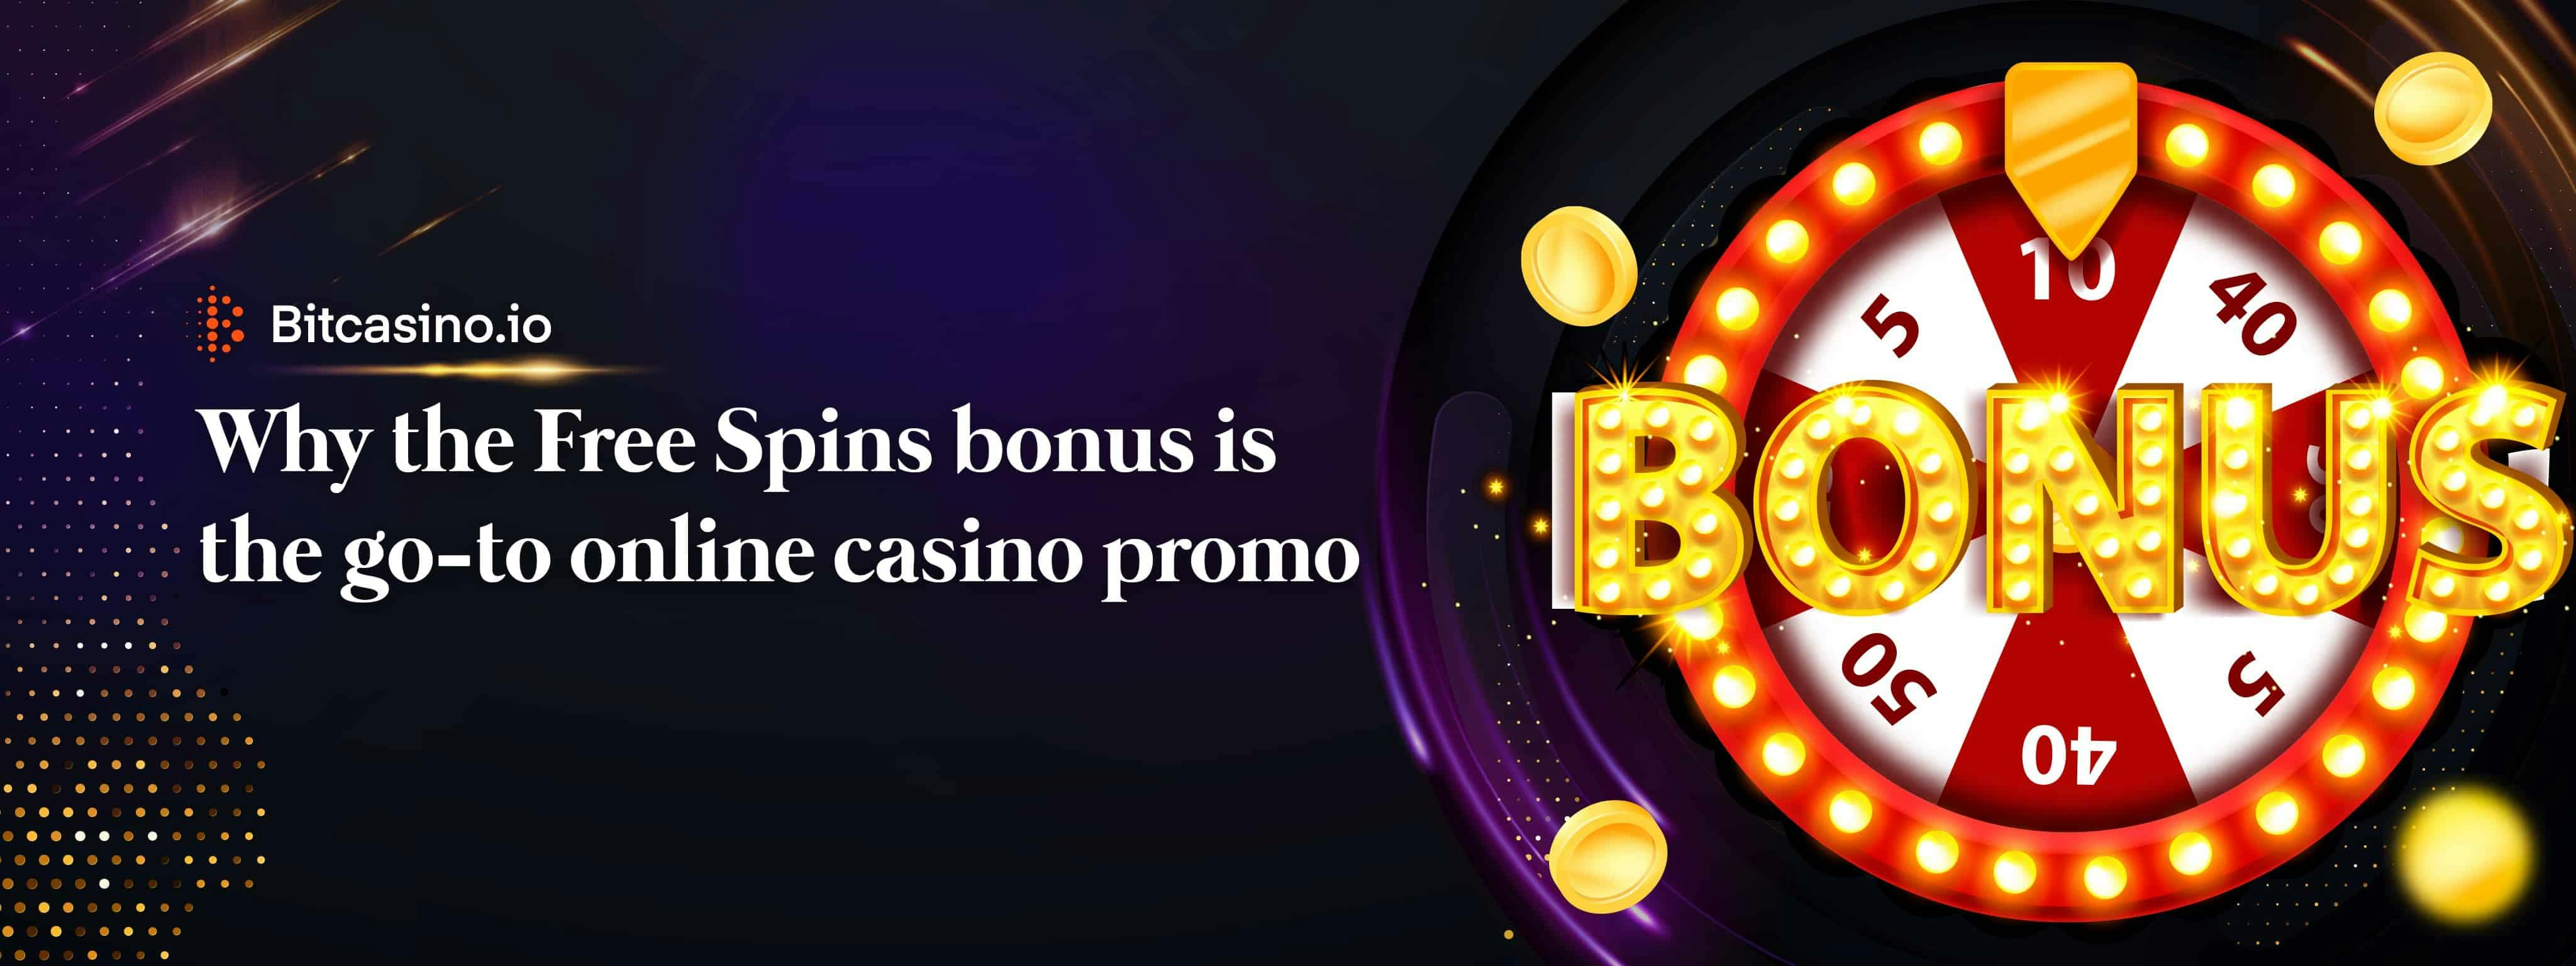 7Bit Casino 75 Free Spins: No Deposit Bonus Codes in 2024